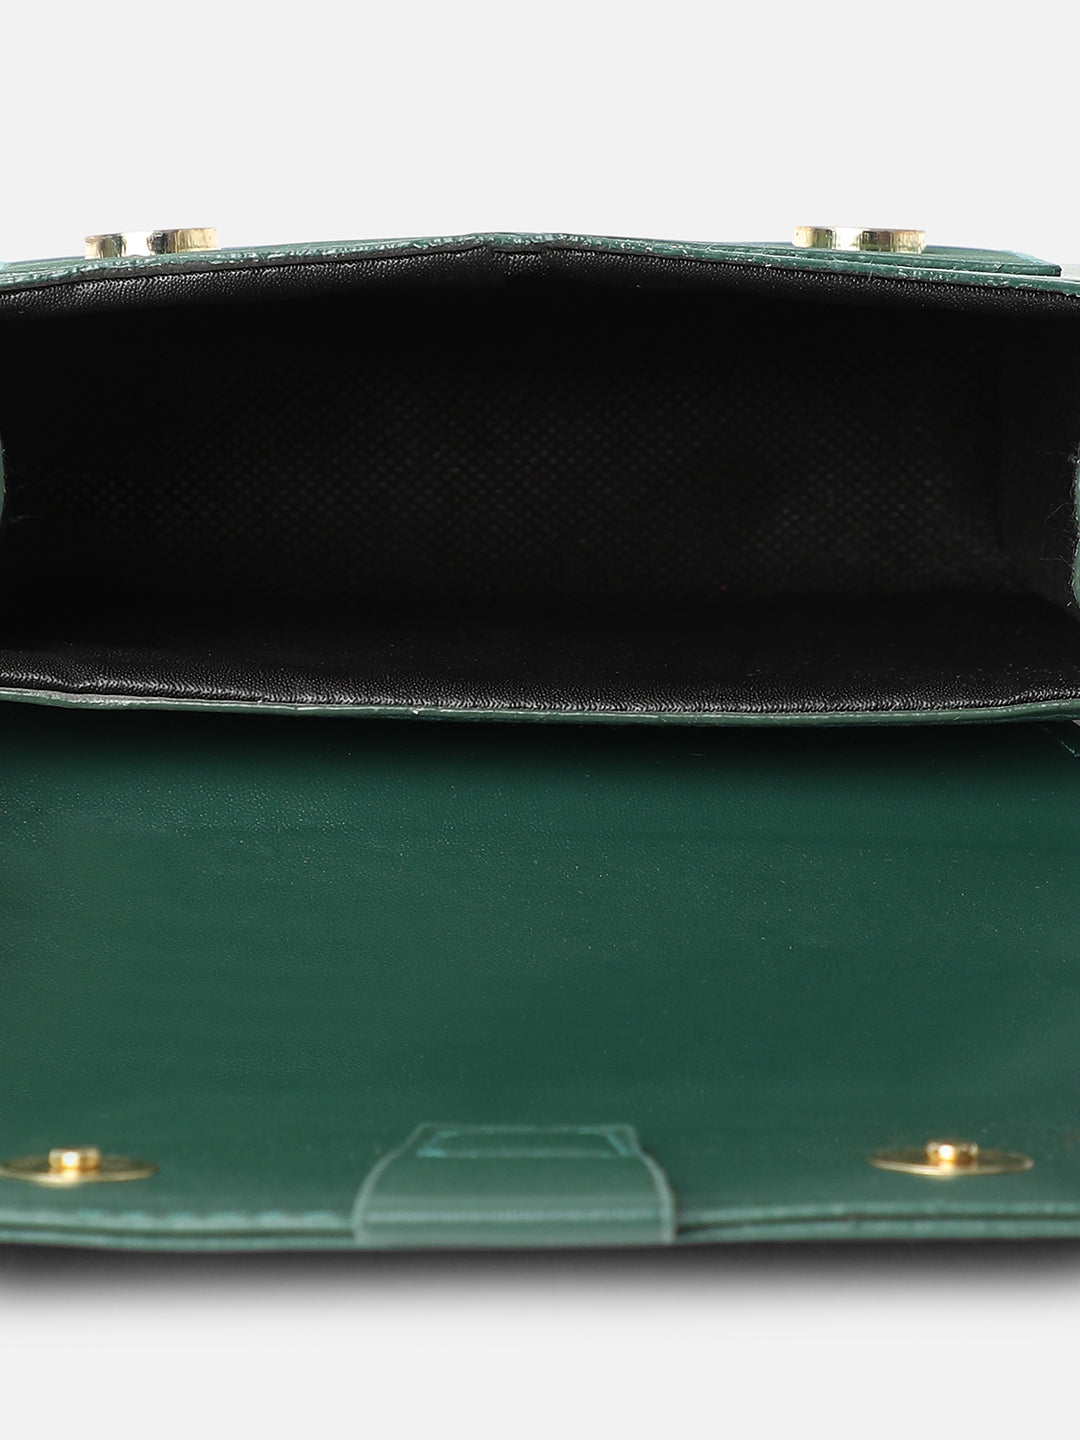 Harmony Green Handbag